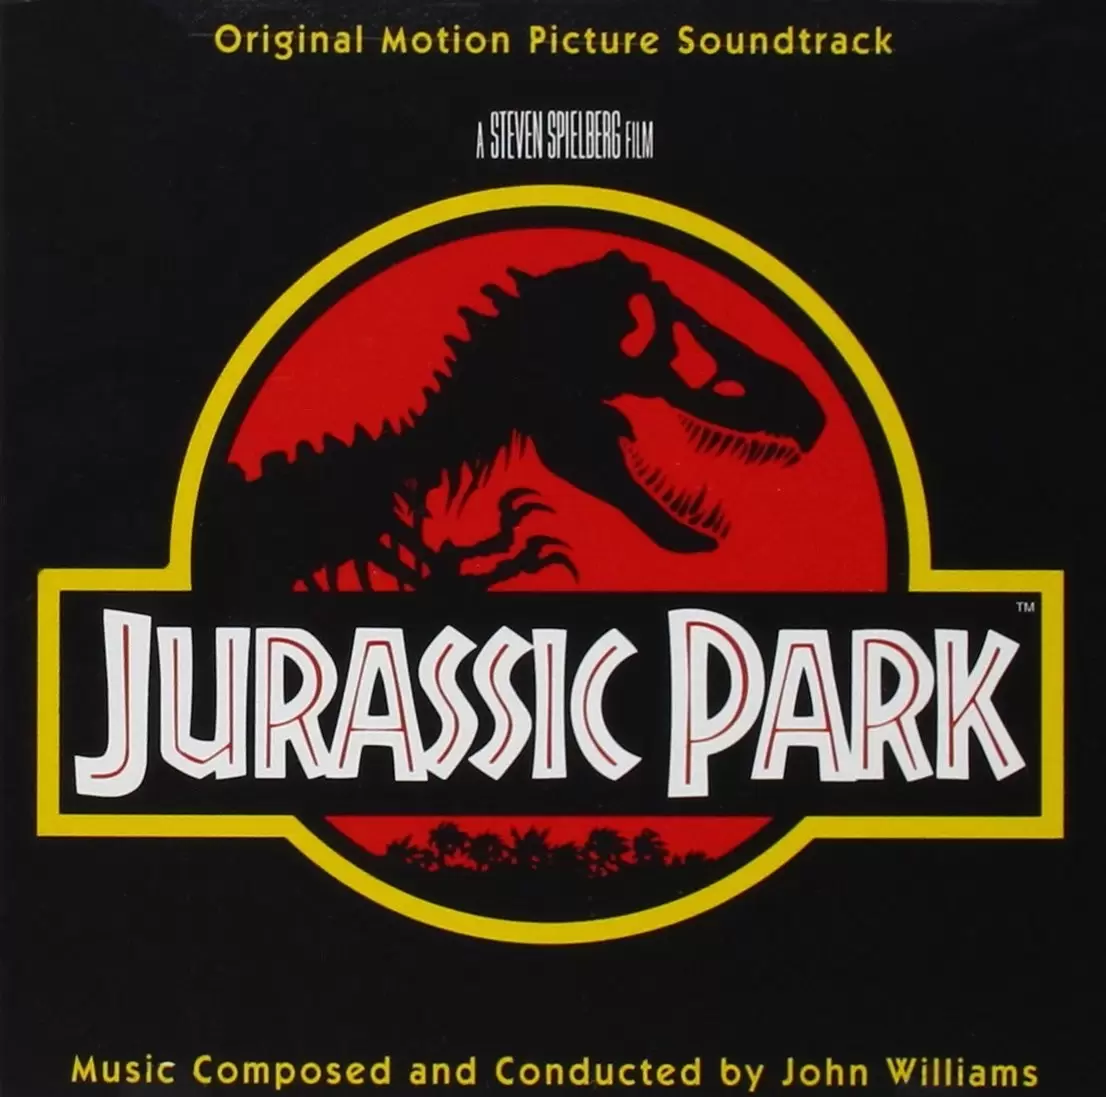 Bande originale de films, jeux vidéos et séries TV - Jurassic Park